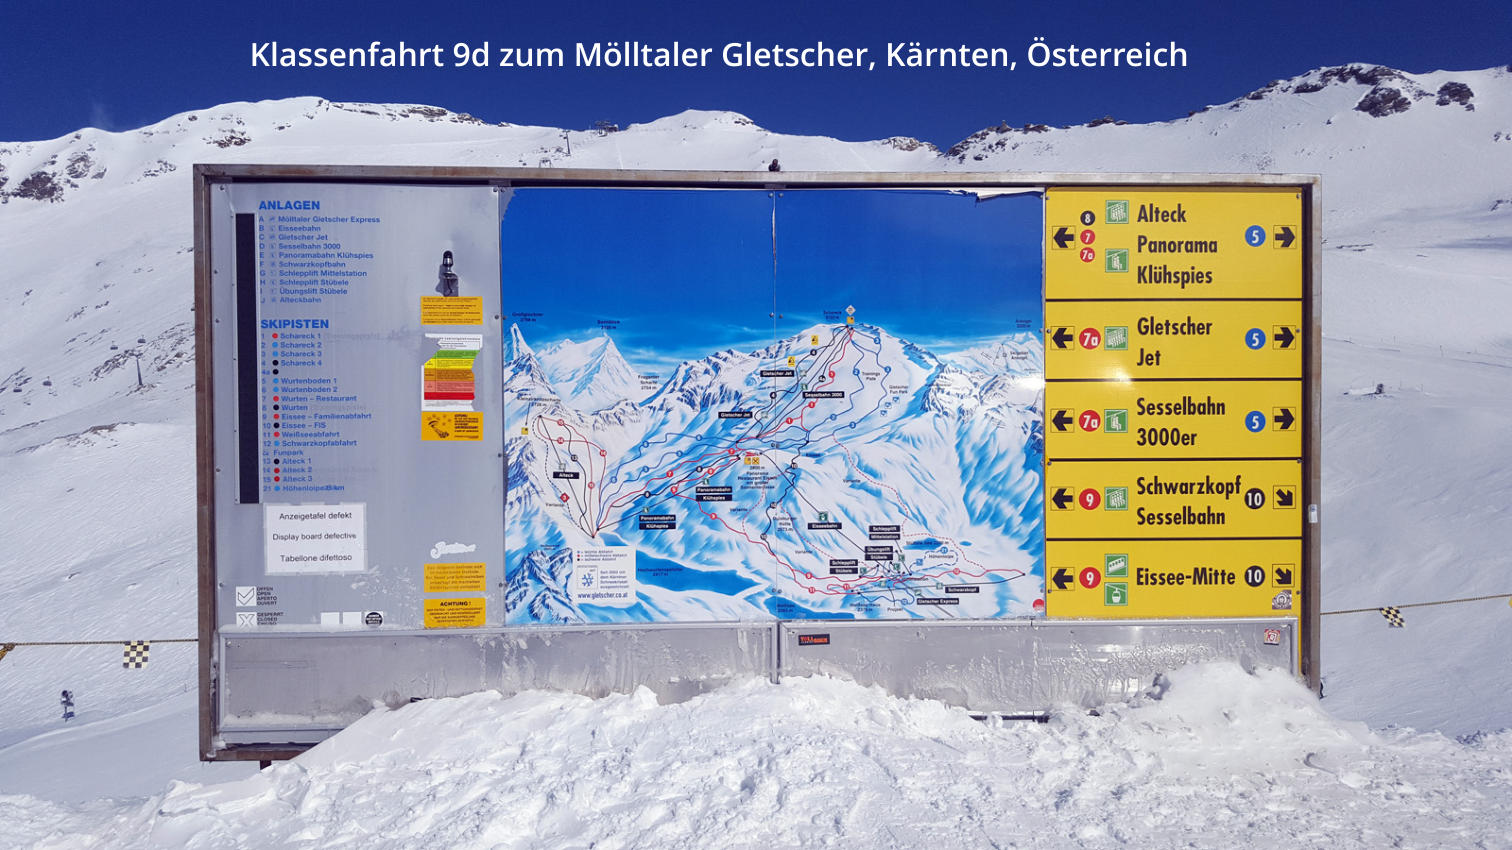 Klassenfahrt 9d zum Mölltaler Gletscher, Kärnten, Österreich